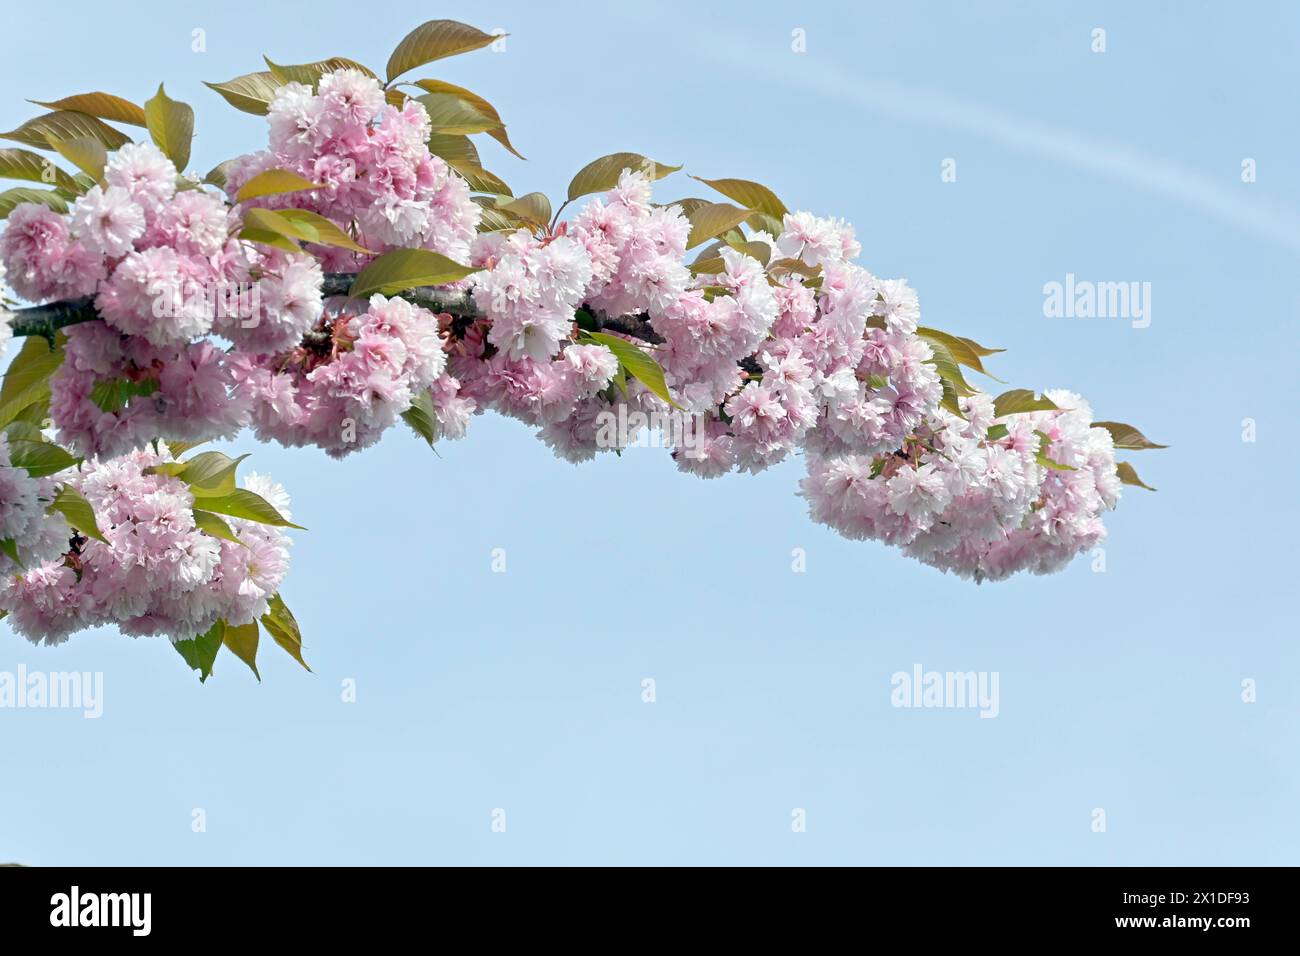 Zierkirschen blühen im Frühjahr, hellrosa Blüten, halbgefüllt zarter lieblichen Duft Wegen der Vollkommenheit der Blüte feiern die Japaner im Frühling Hanami das Kirschblütenfest. *** I ciliegie ornamentali fioriscono in primavera, fiori rosa chiaro, semi-doppi delicati, fragranza dolce a causa della perfezione della fioritura, i giapponesi celebrano Hanami - il festival della fioritura dei ciliegi - in primavera Foto Stock